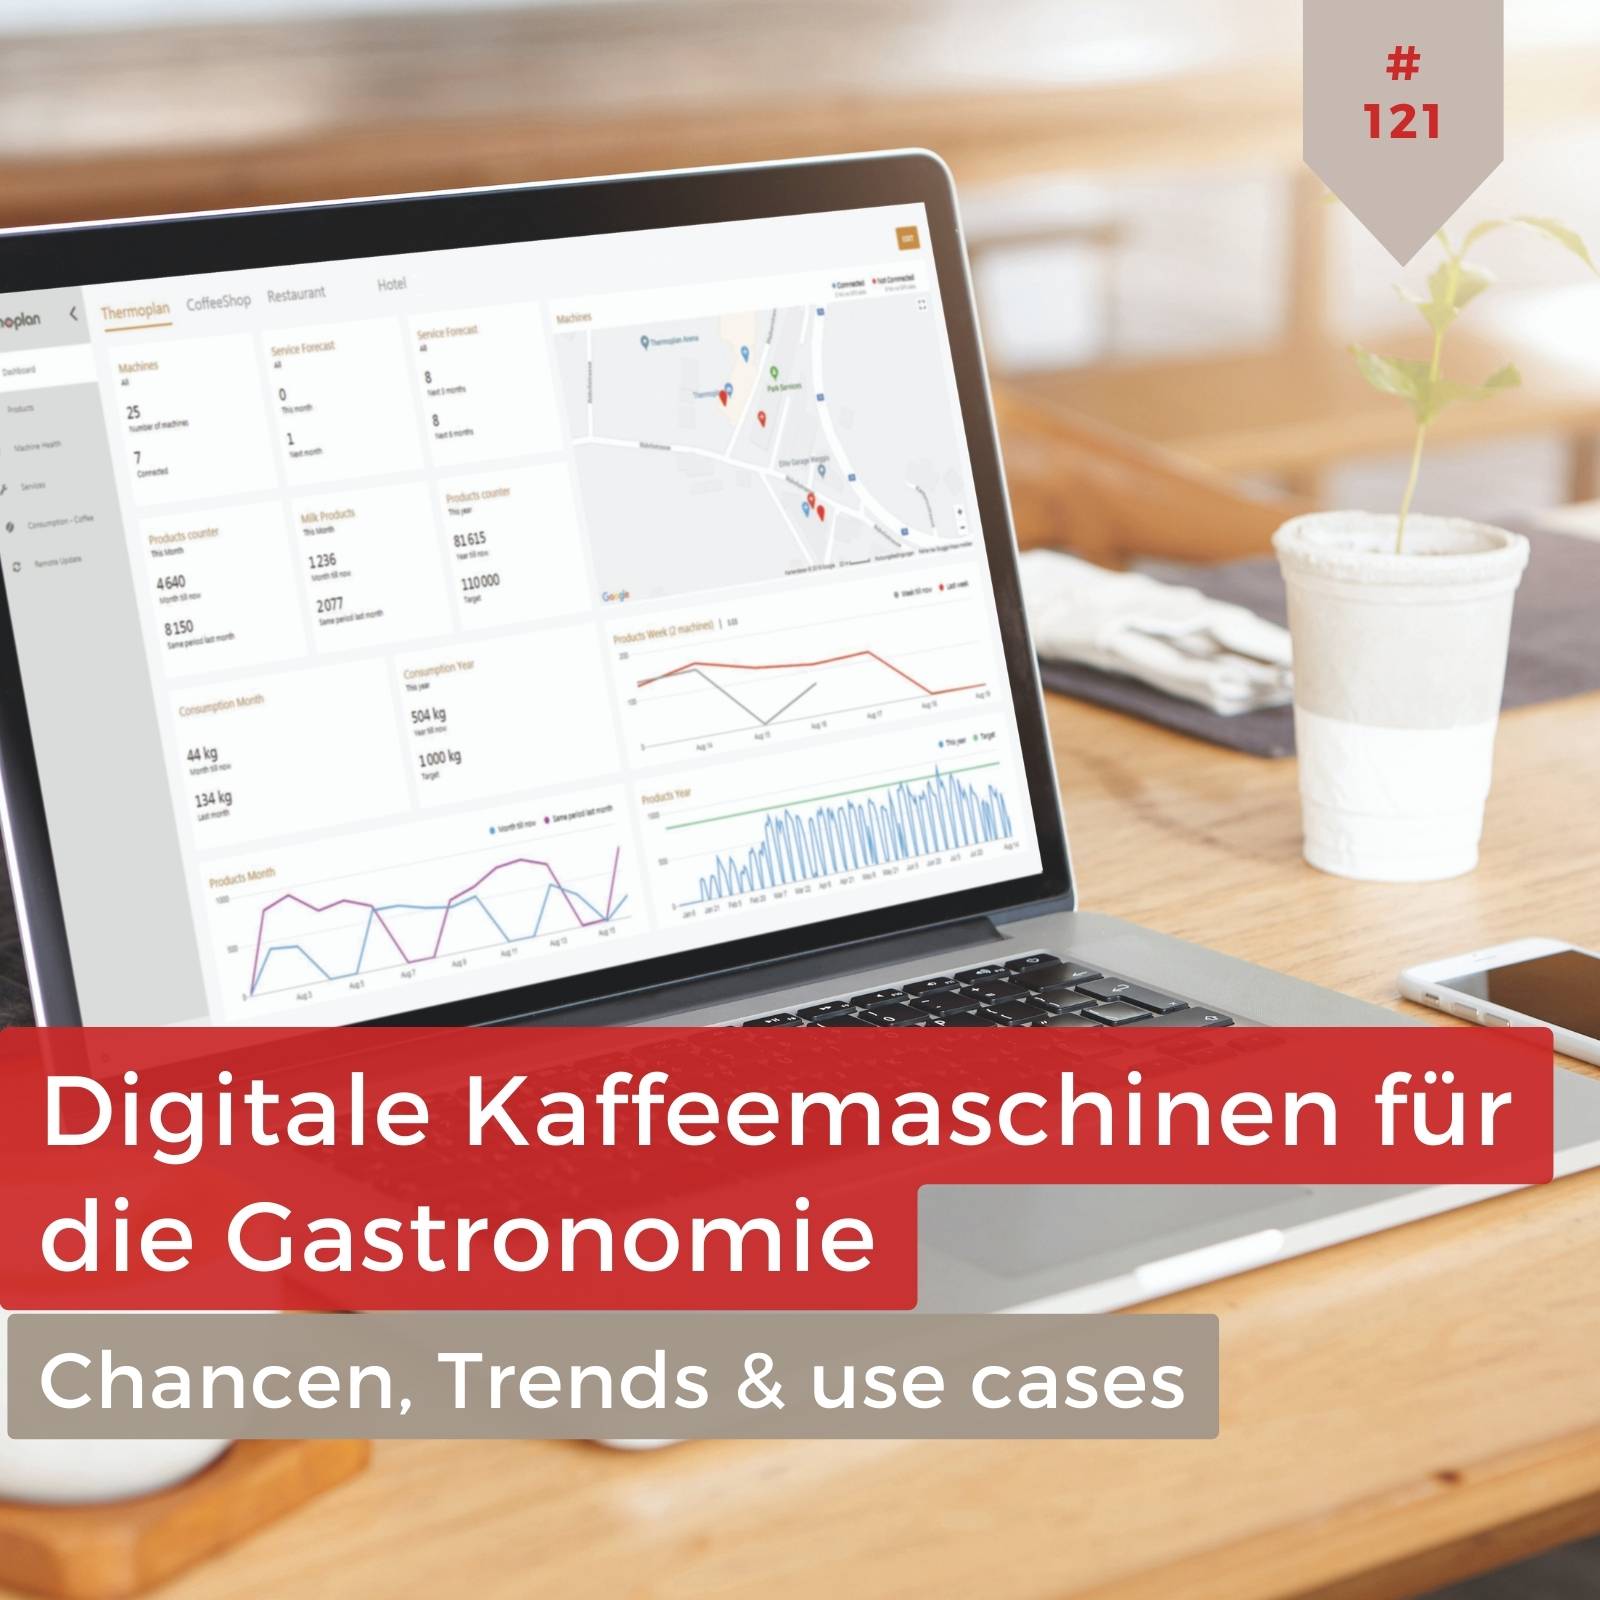 Digitale Kaffeemaschinen in der Gastronomie: Trends, Chancen & use cases